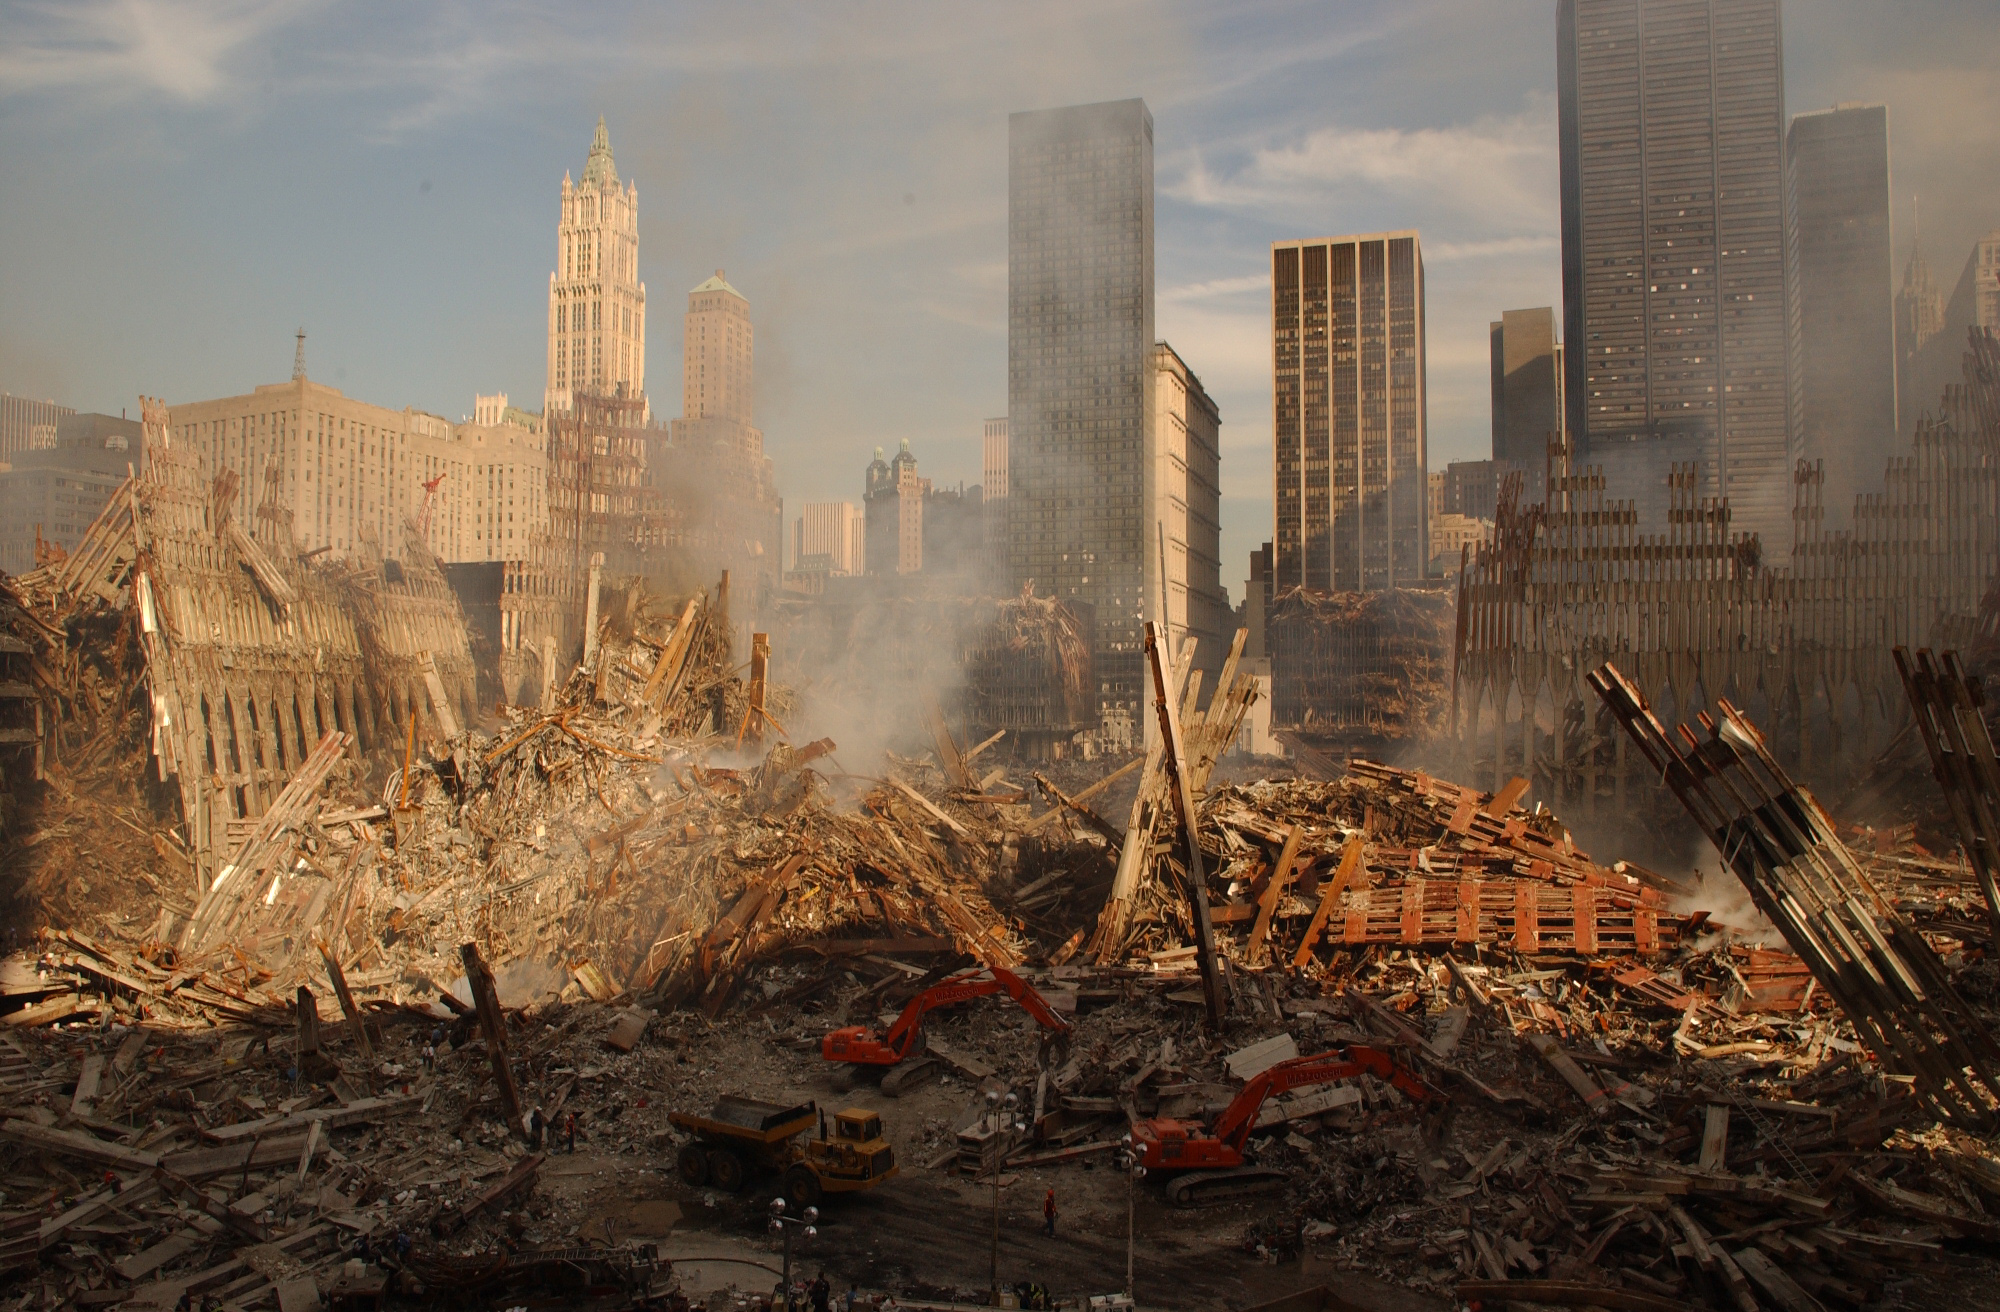 WELDERS AT GROUND ZERO 9/11 8x10 SILVER HALIDE PHOTO PRINT 